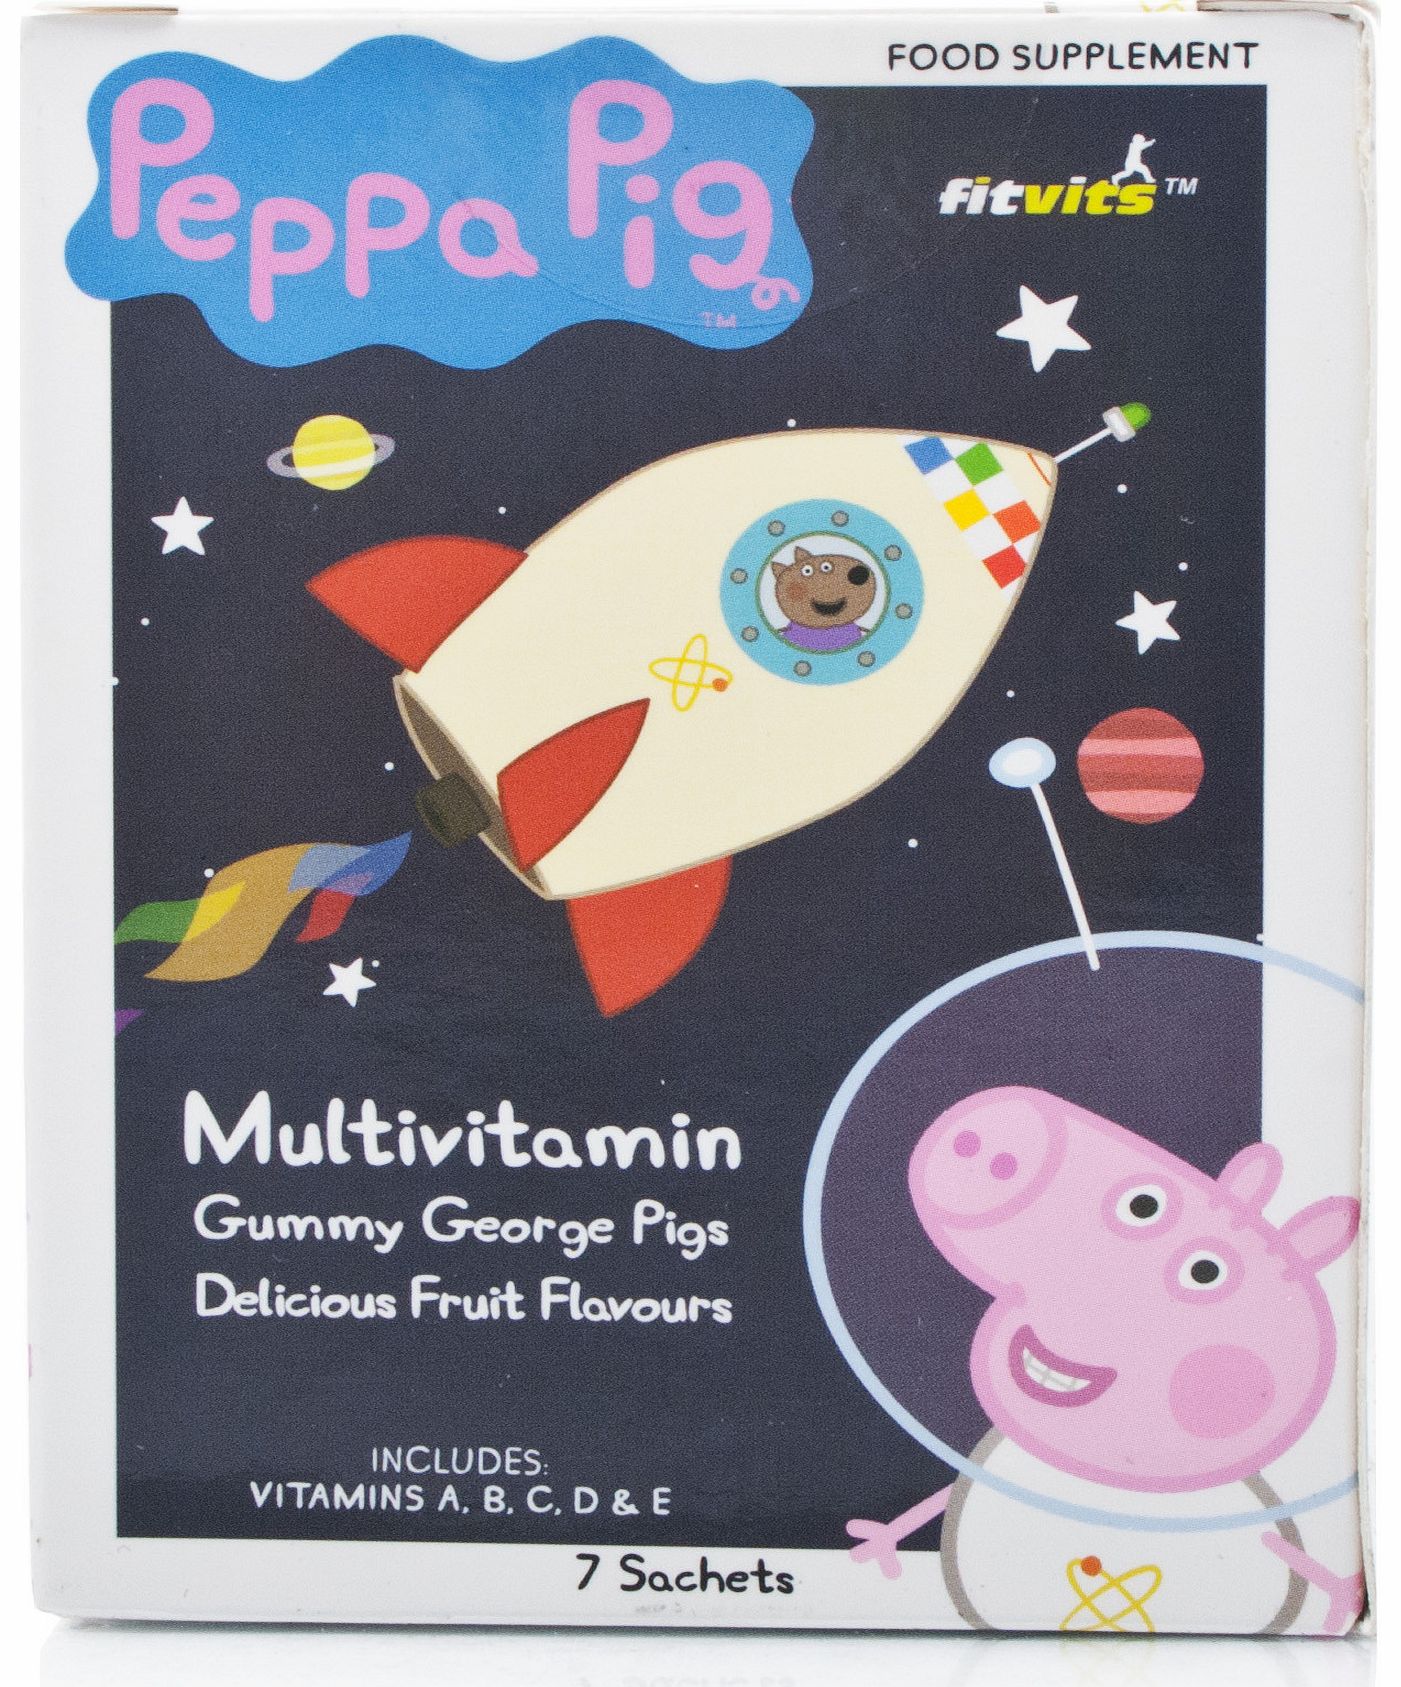 Fitvit Peppa Pig Multivitamins George